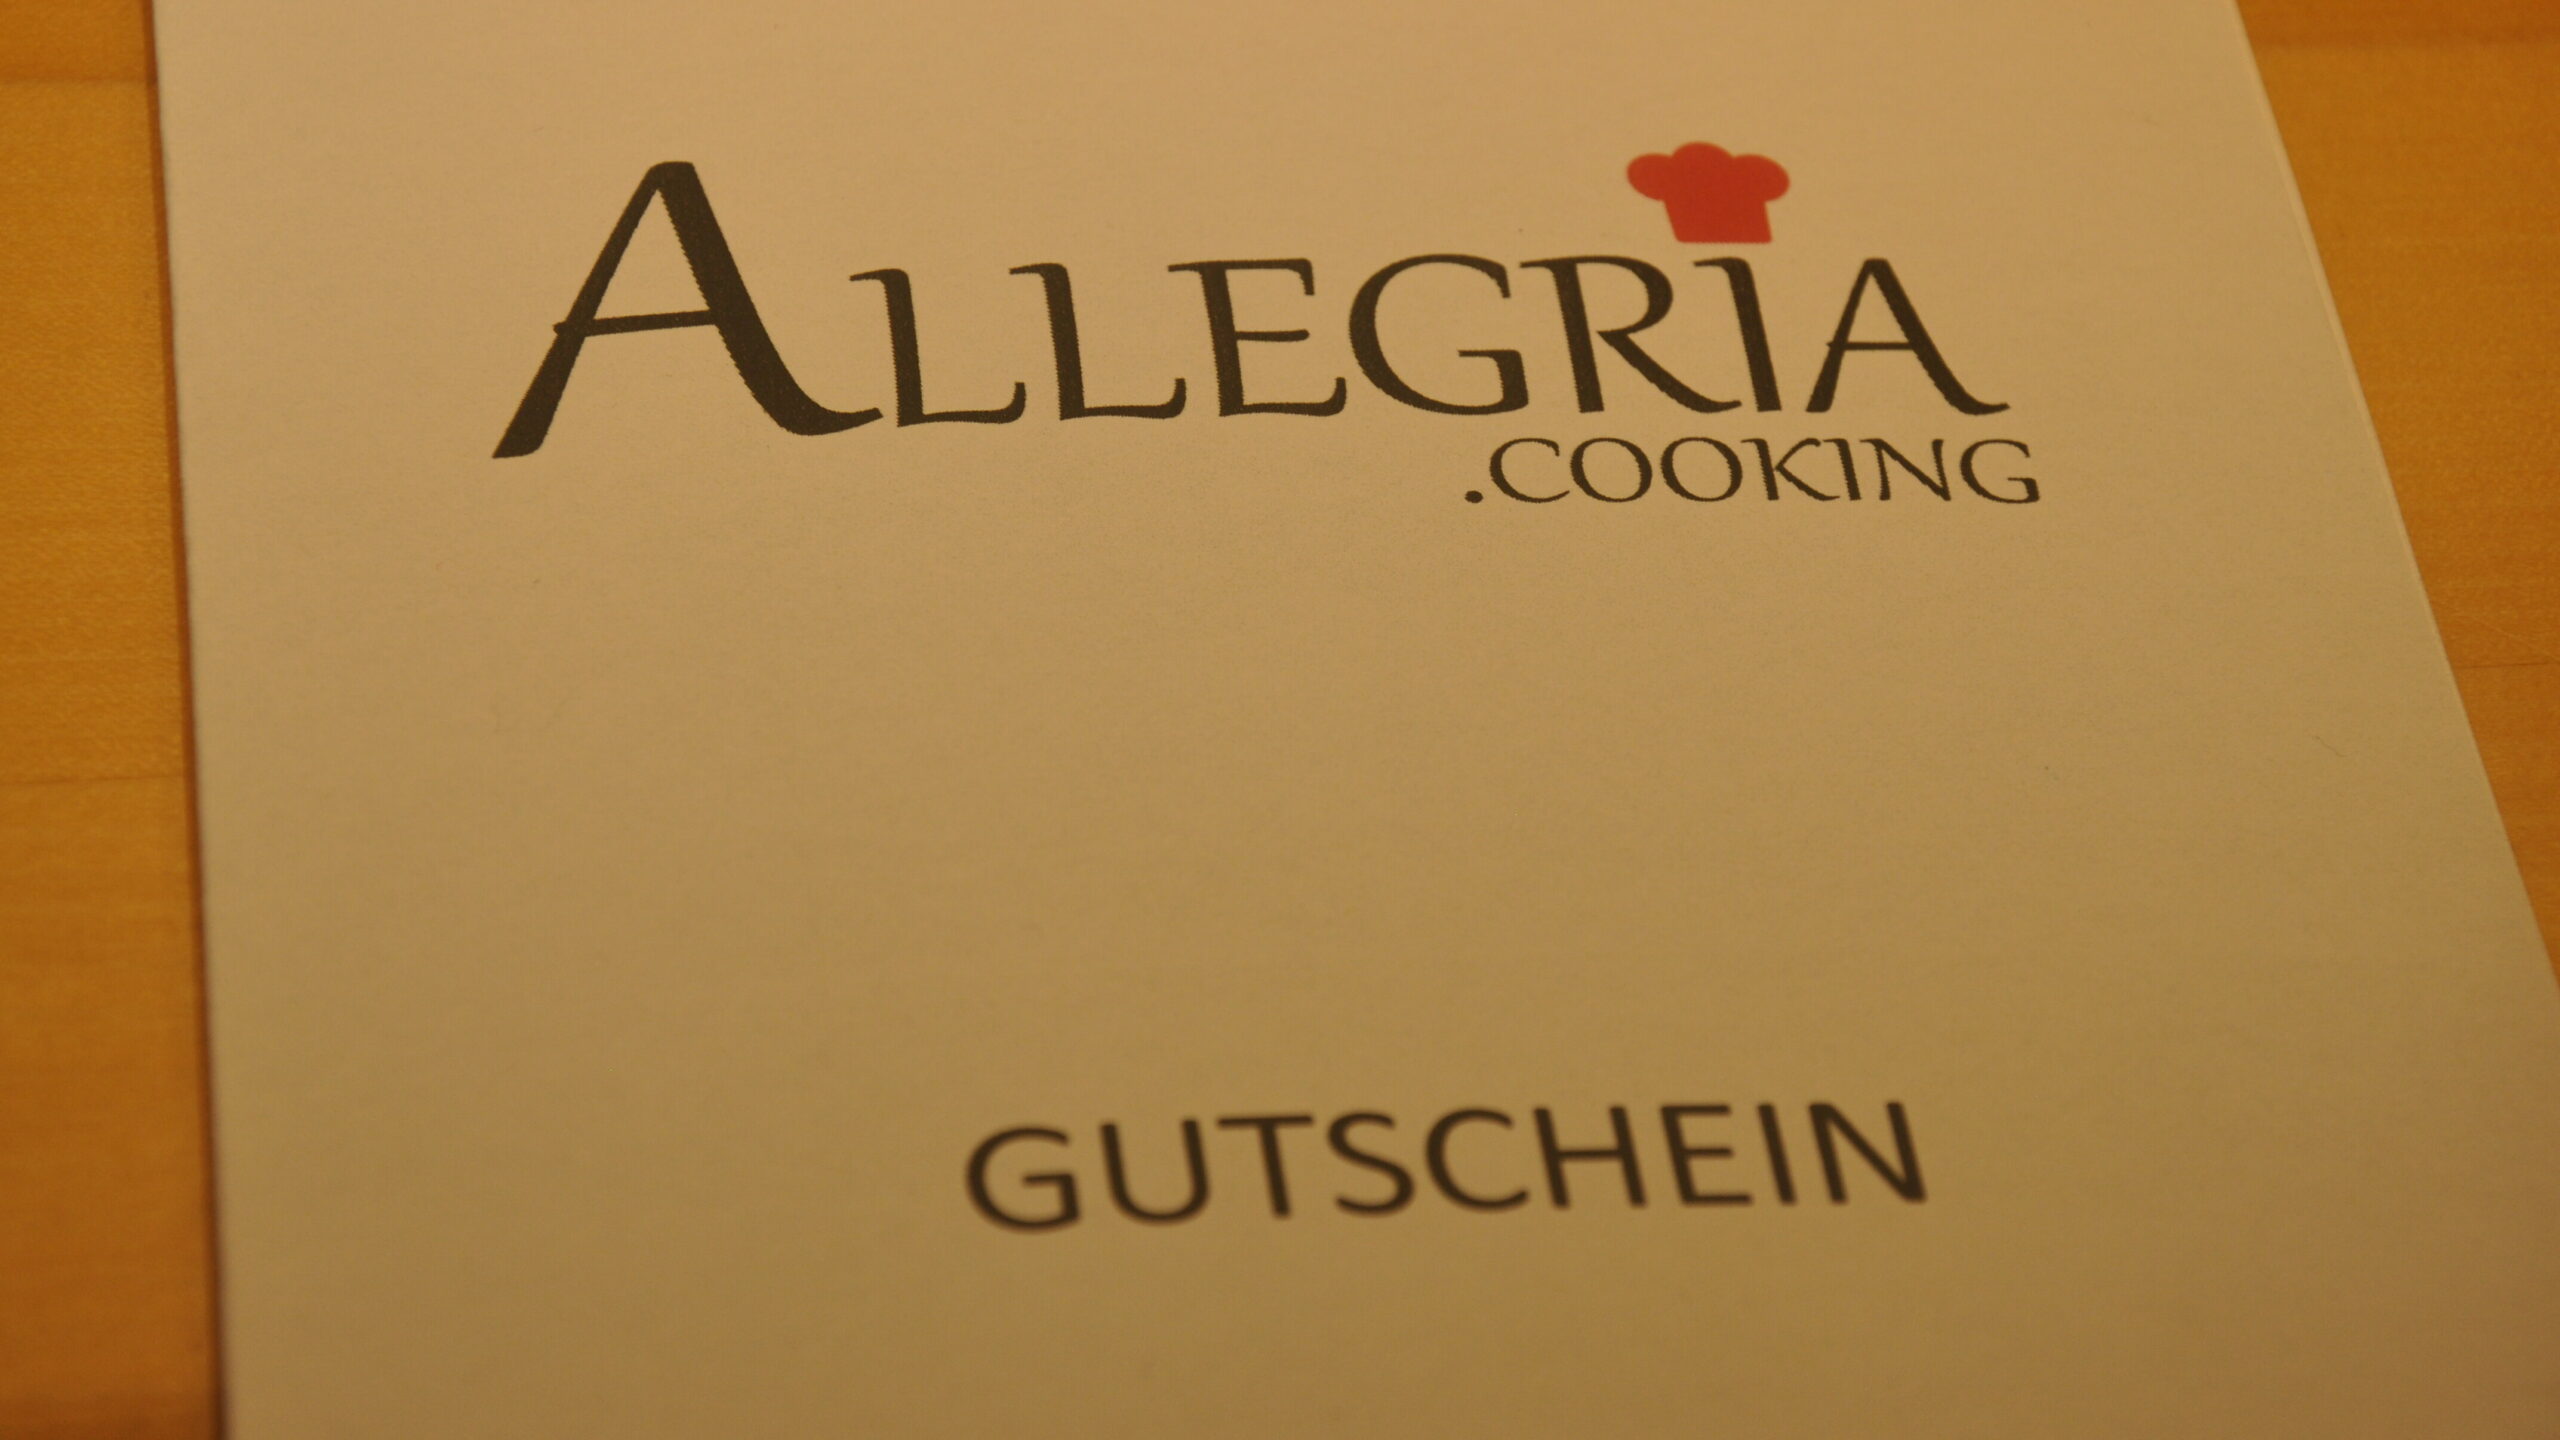 Gutschein für Allegria.cooking